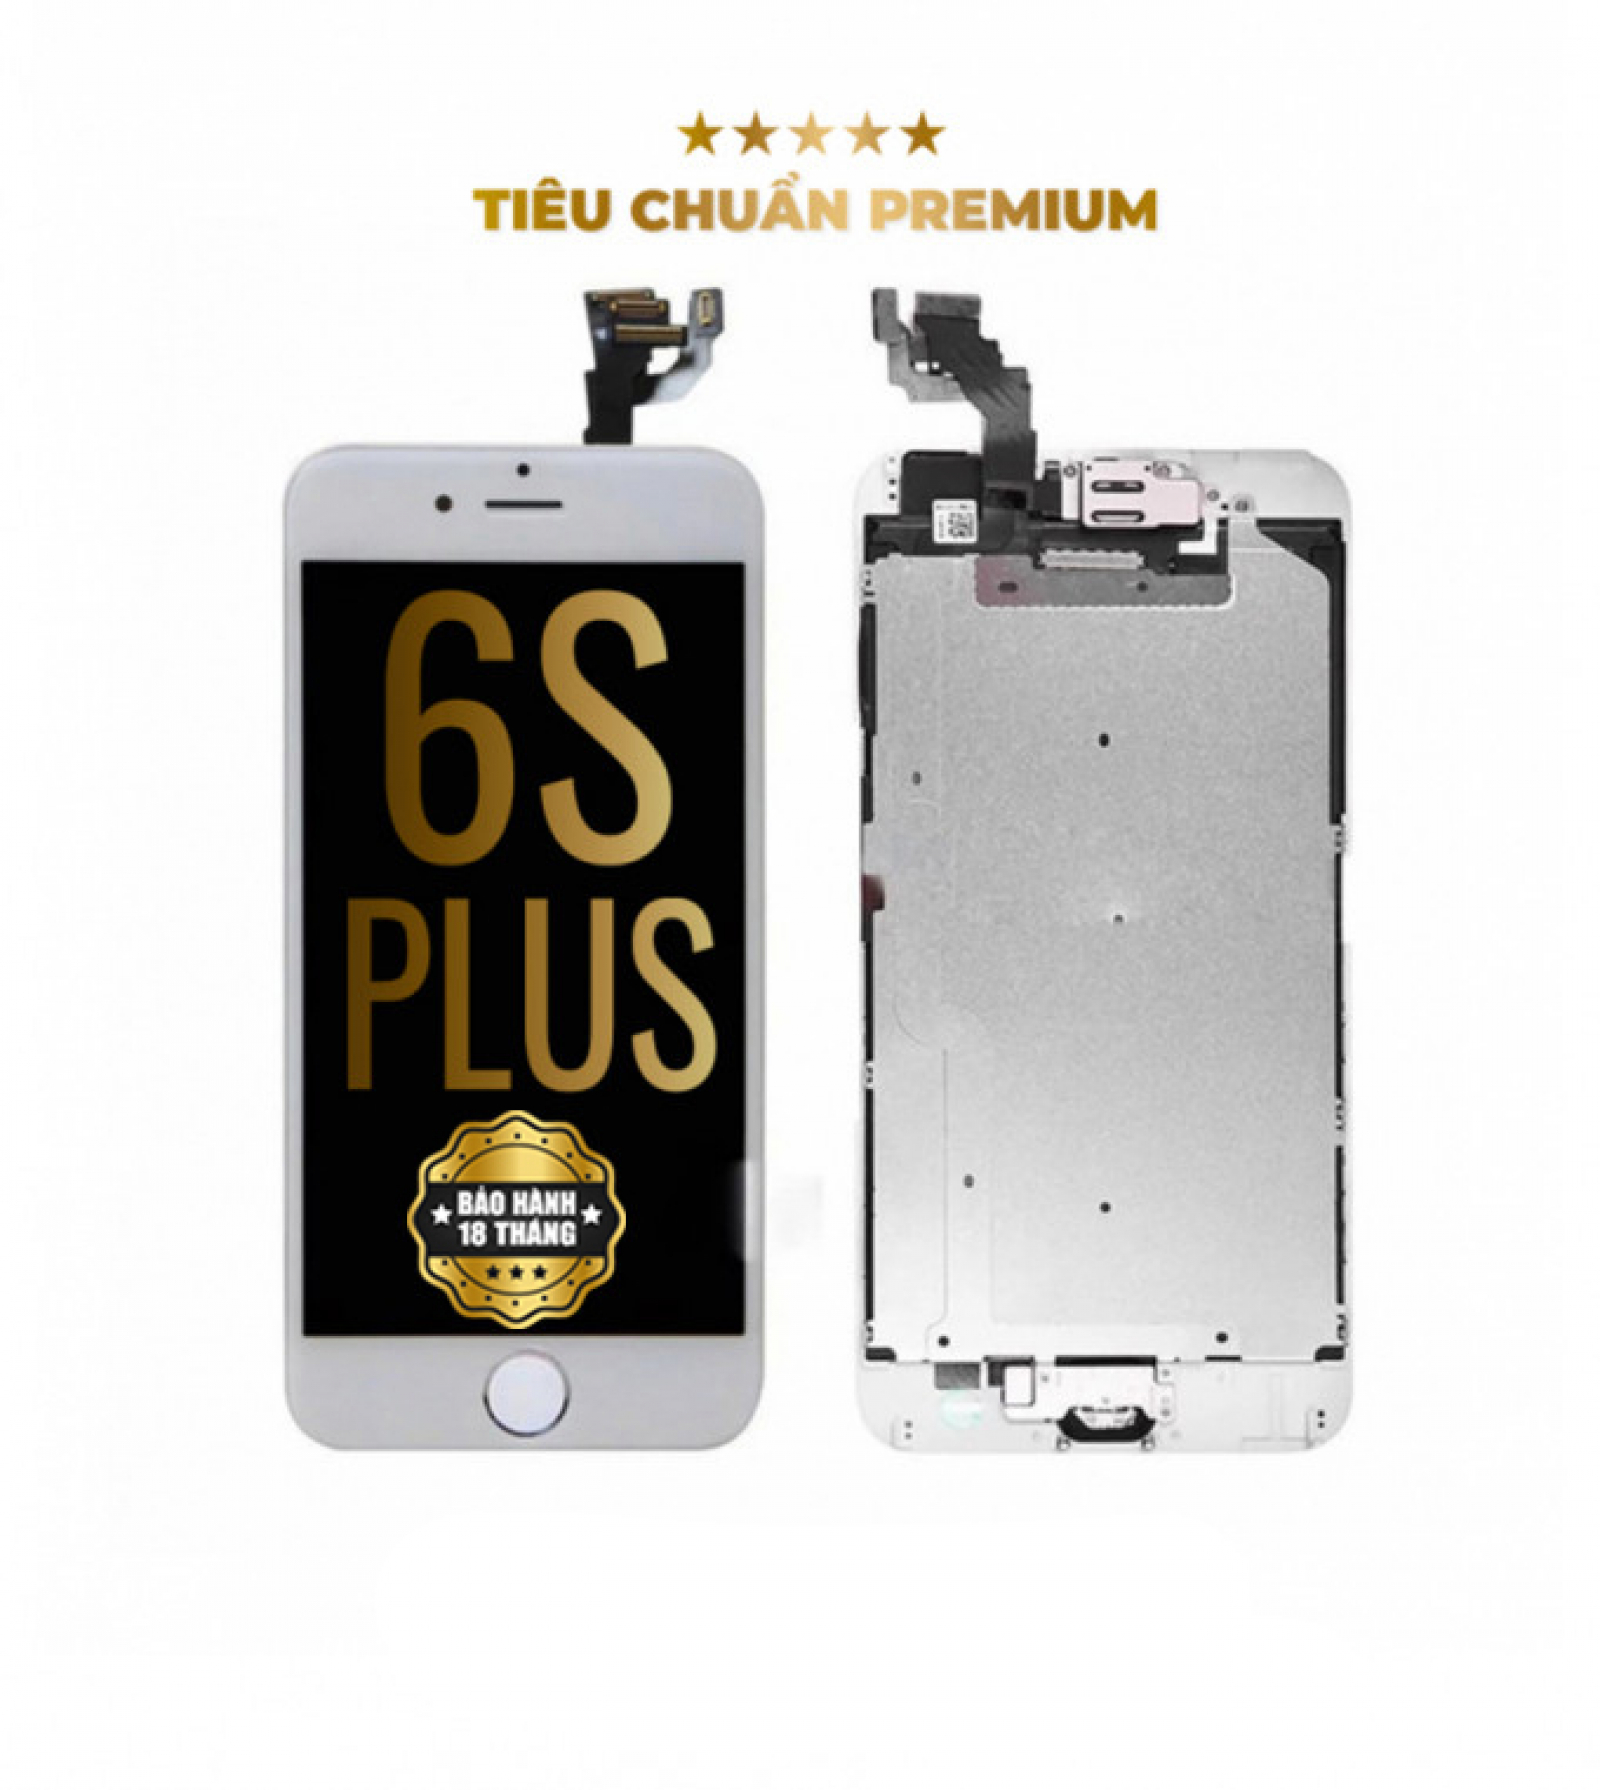 iPhone 6s/6s Plus lộ giá bán